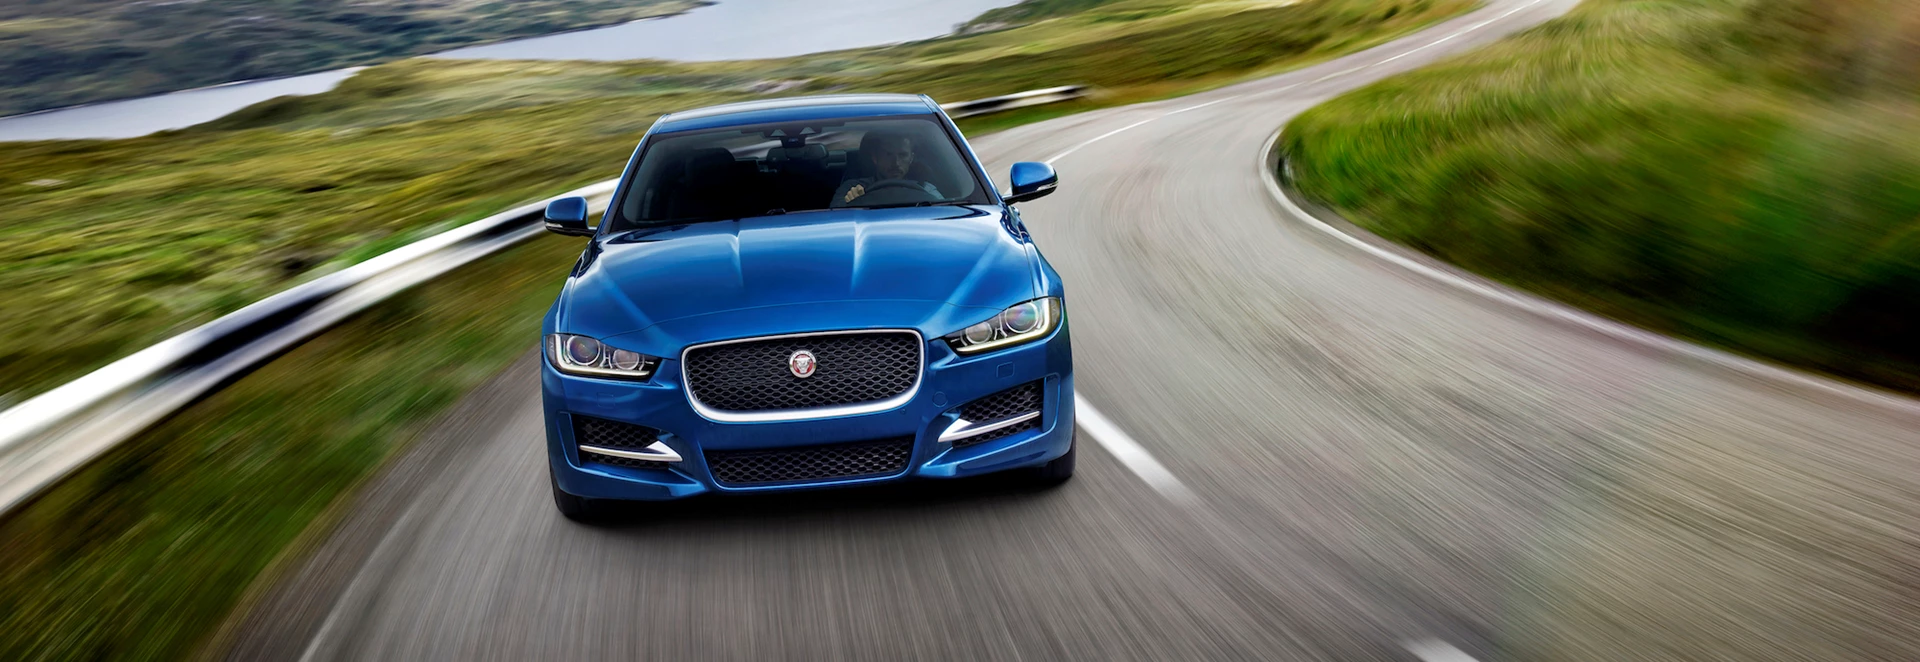 Jaguar to offer 0% finance deals for September plate change